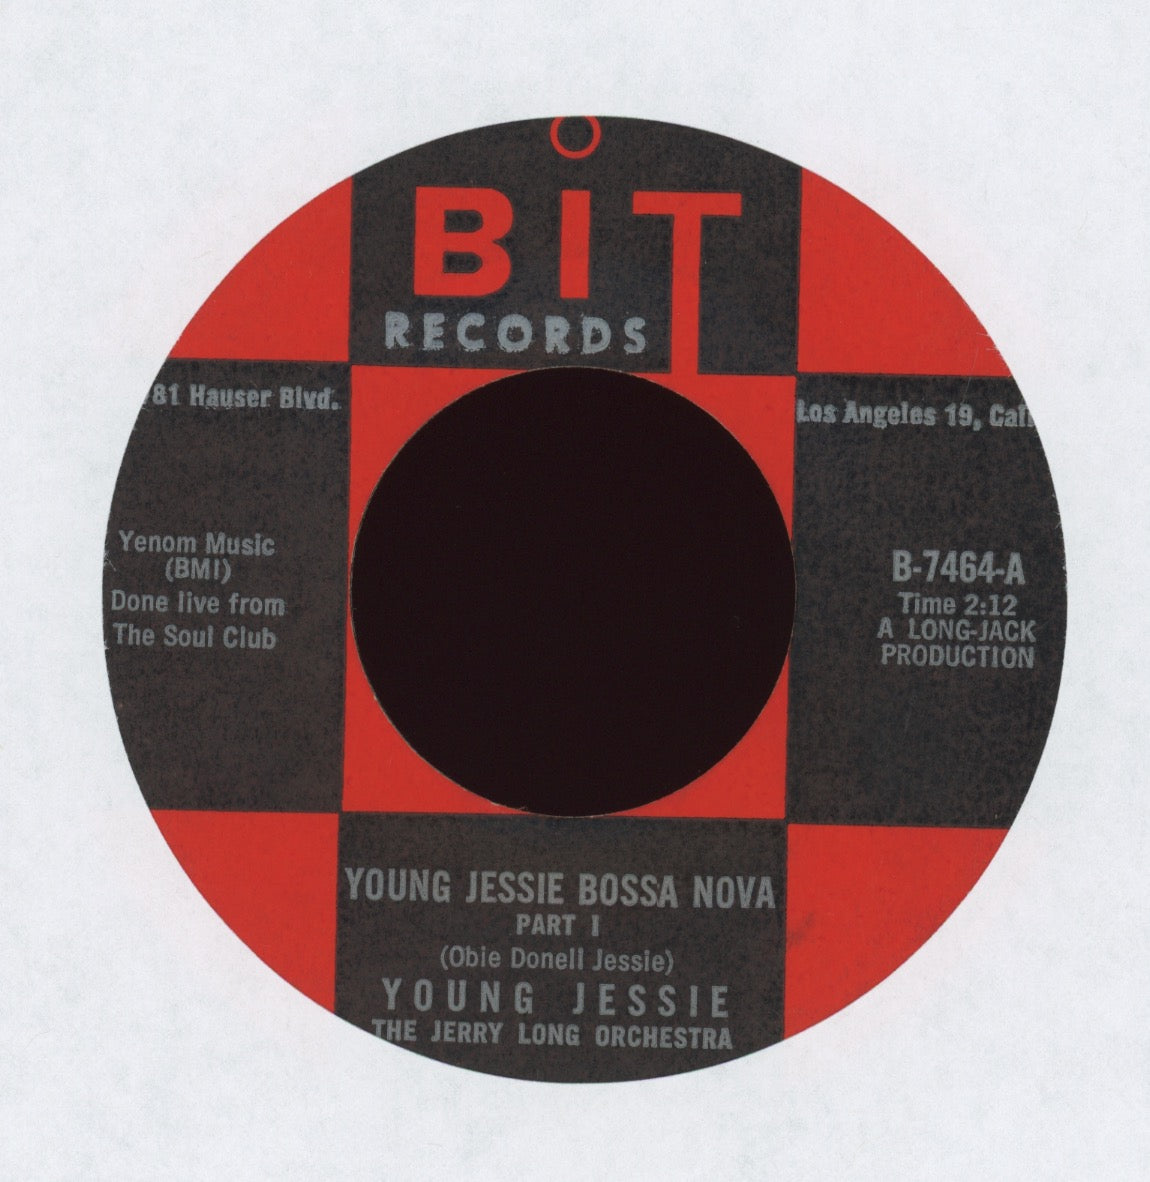 Young Jessie - Young Jessie Bossa Nova on Bit R&B 45